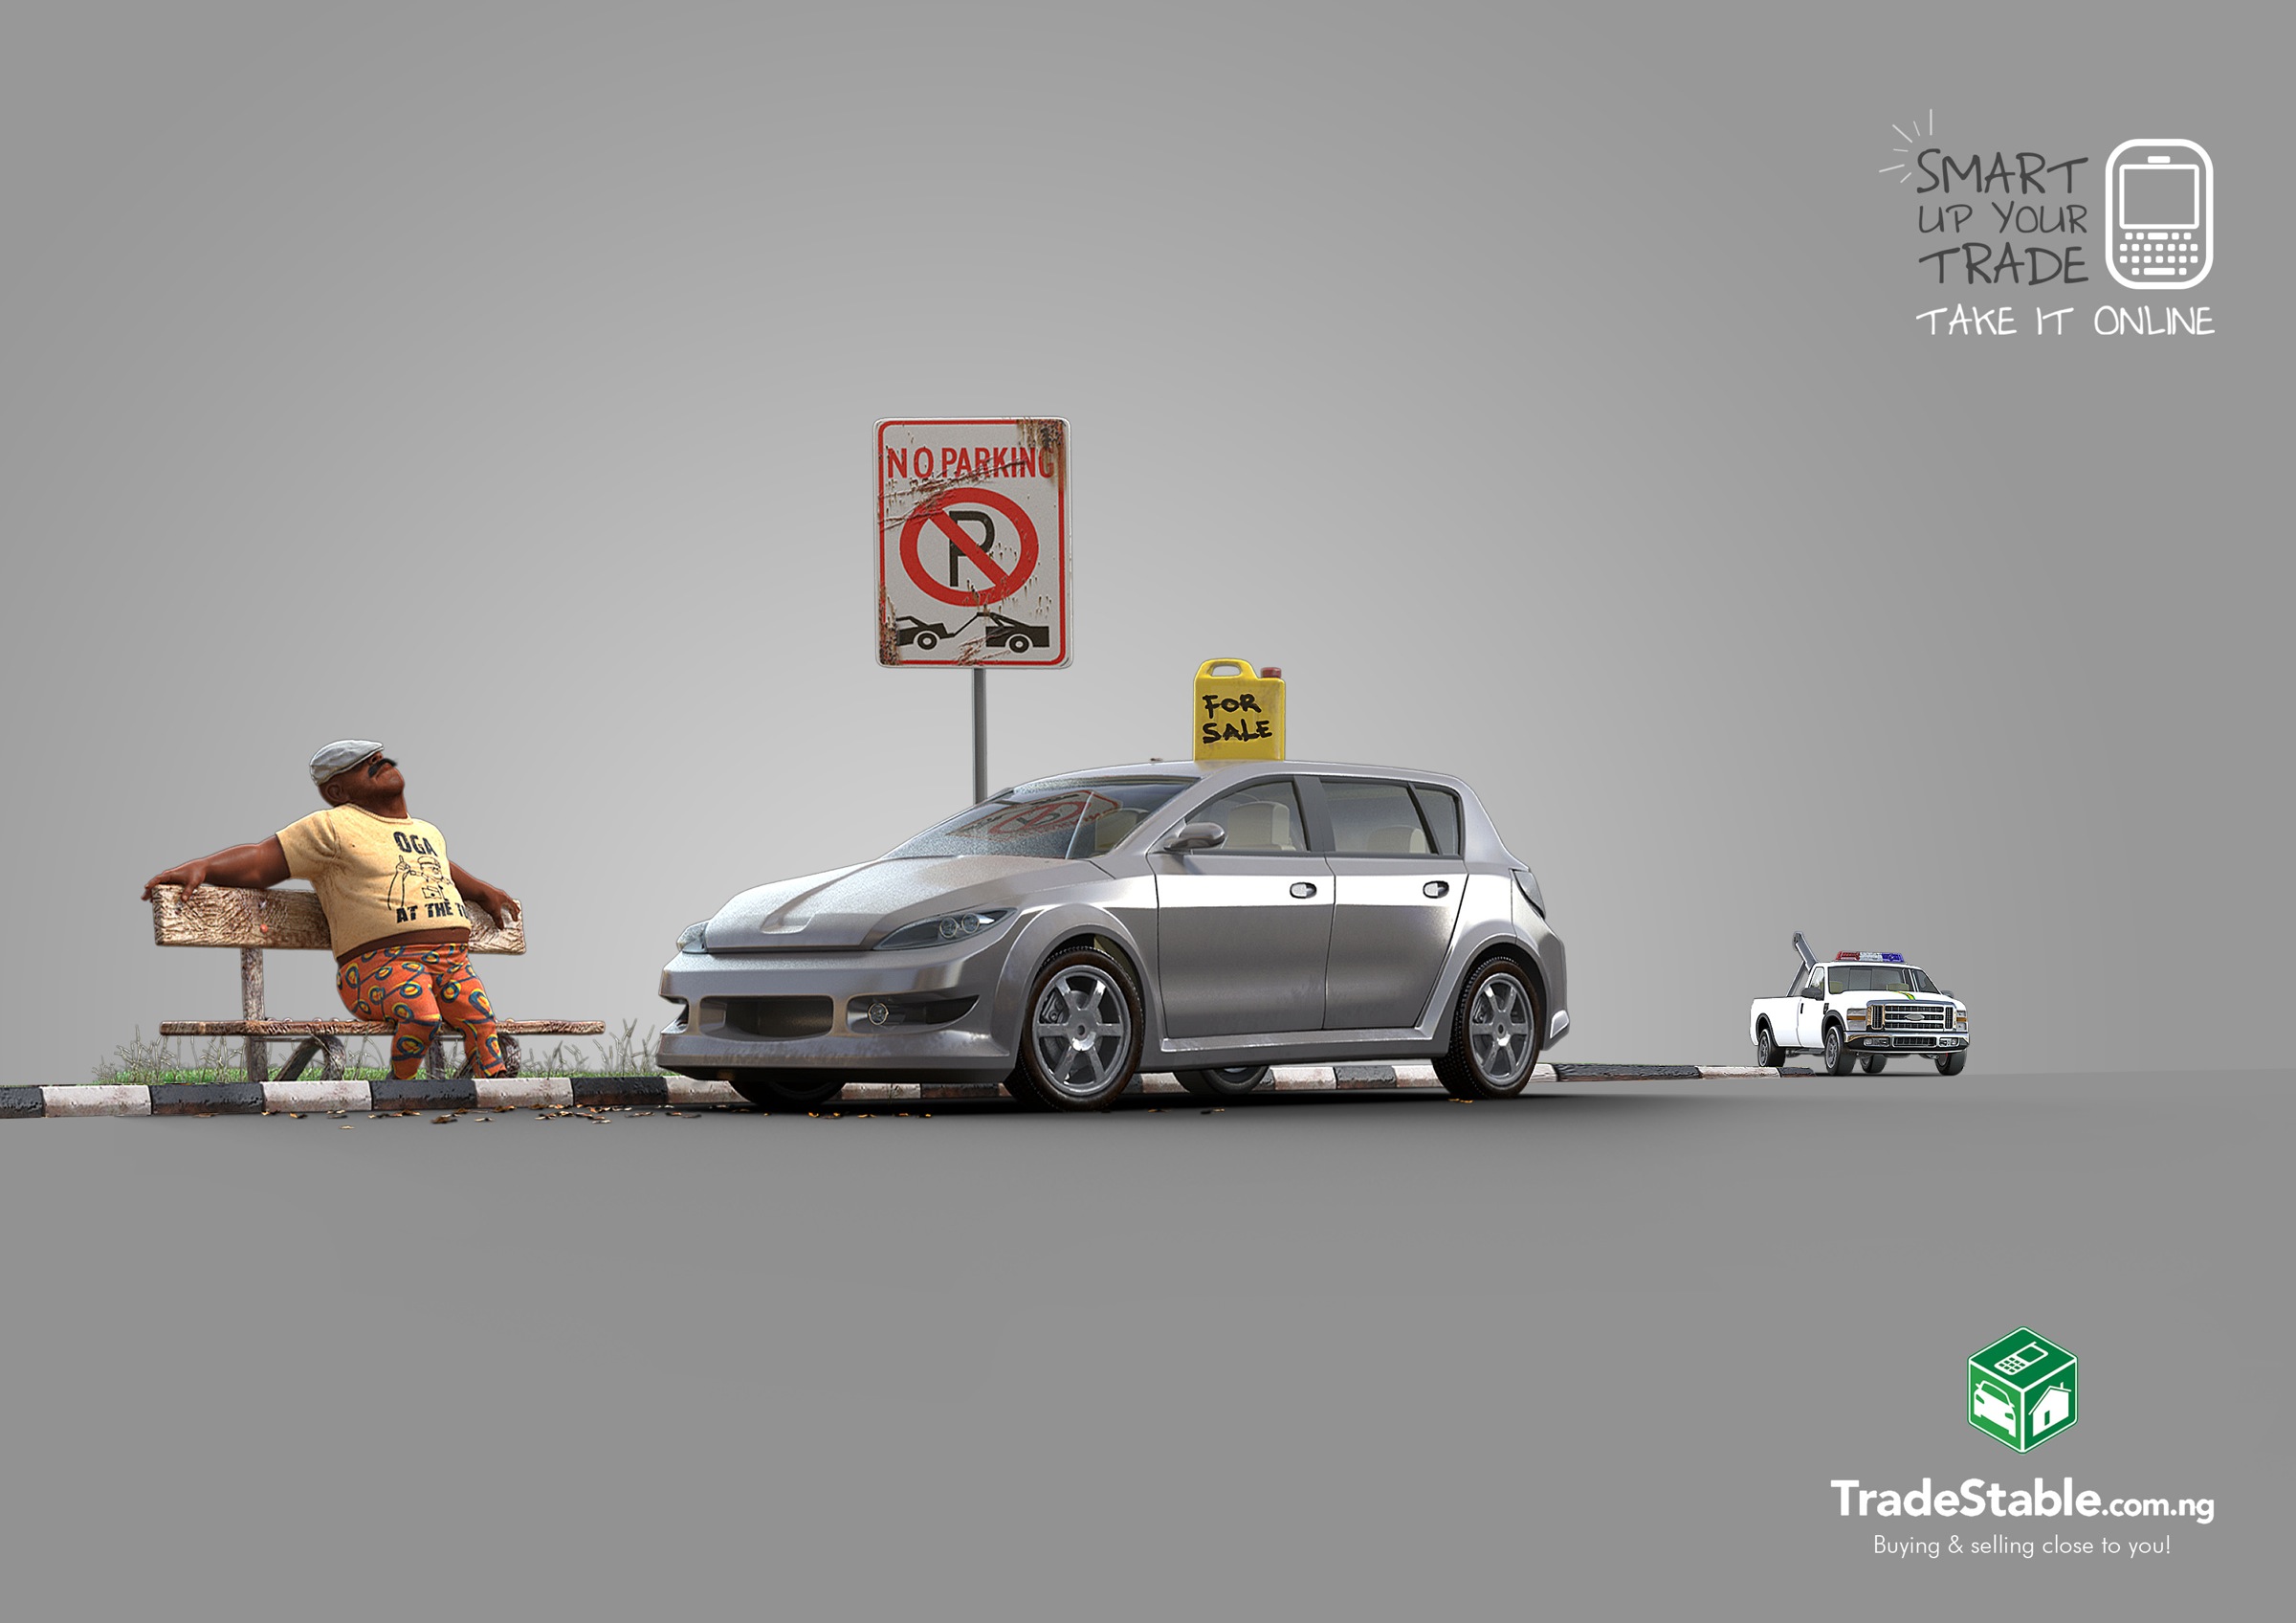 尼日利亚tradestable电子商务网站平面广告设计